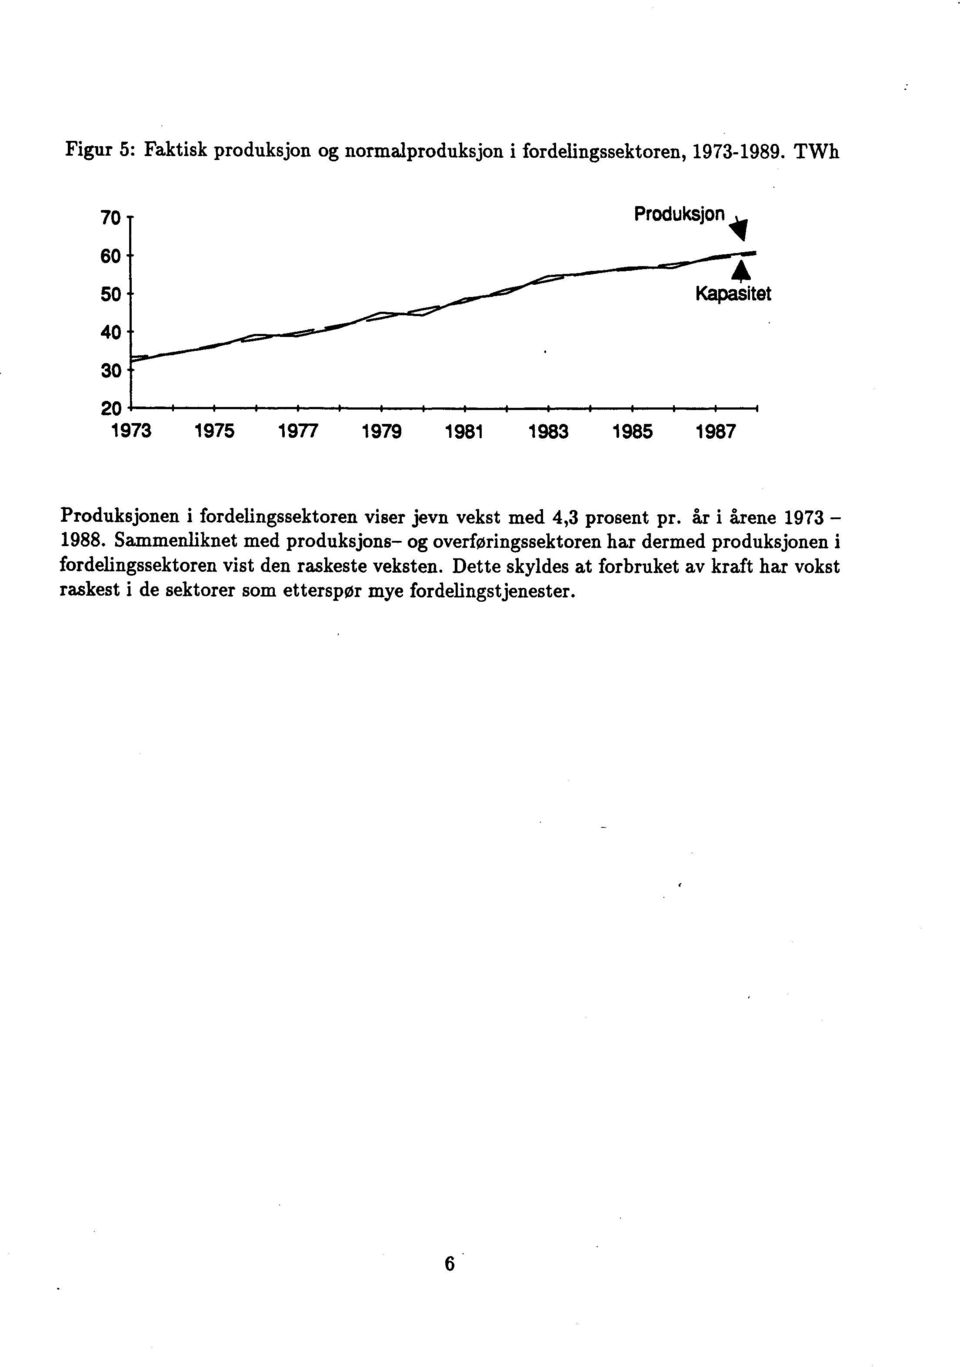 jevn vekst med 4,3 prosent pr. år i årene 1973 1988.